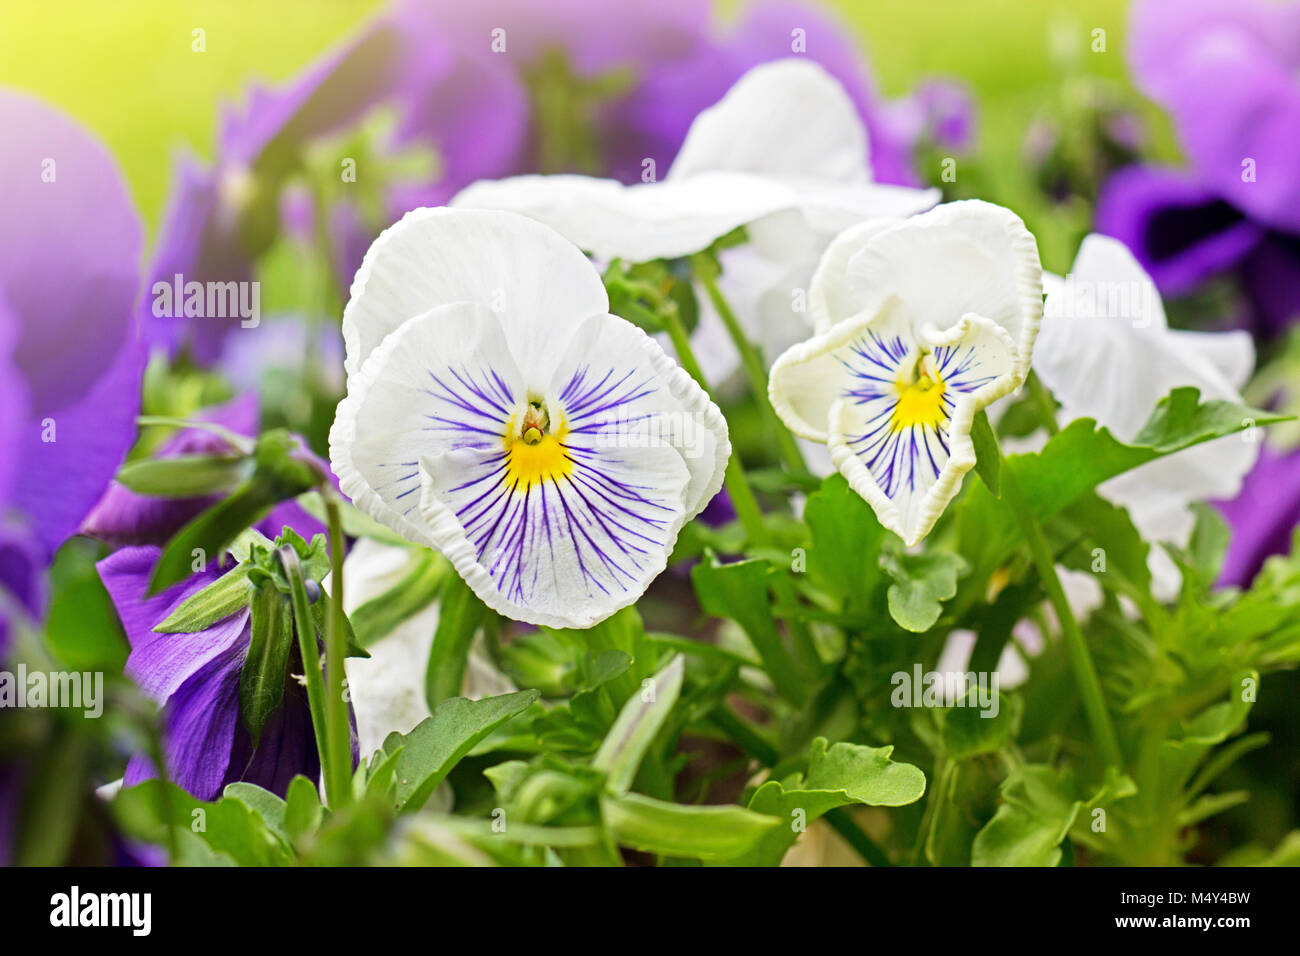 Parterre de violet et blanc Viola tricolor ou kiss-me-quick (cœur-ease fleurs) en été, la beauté dans la nature Banque D'Images